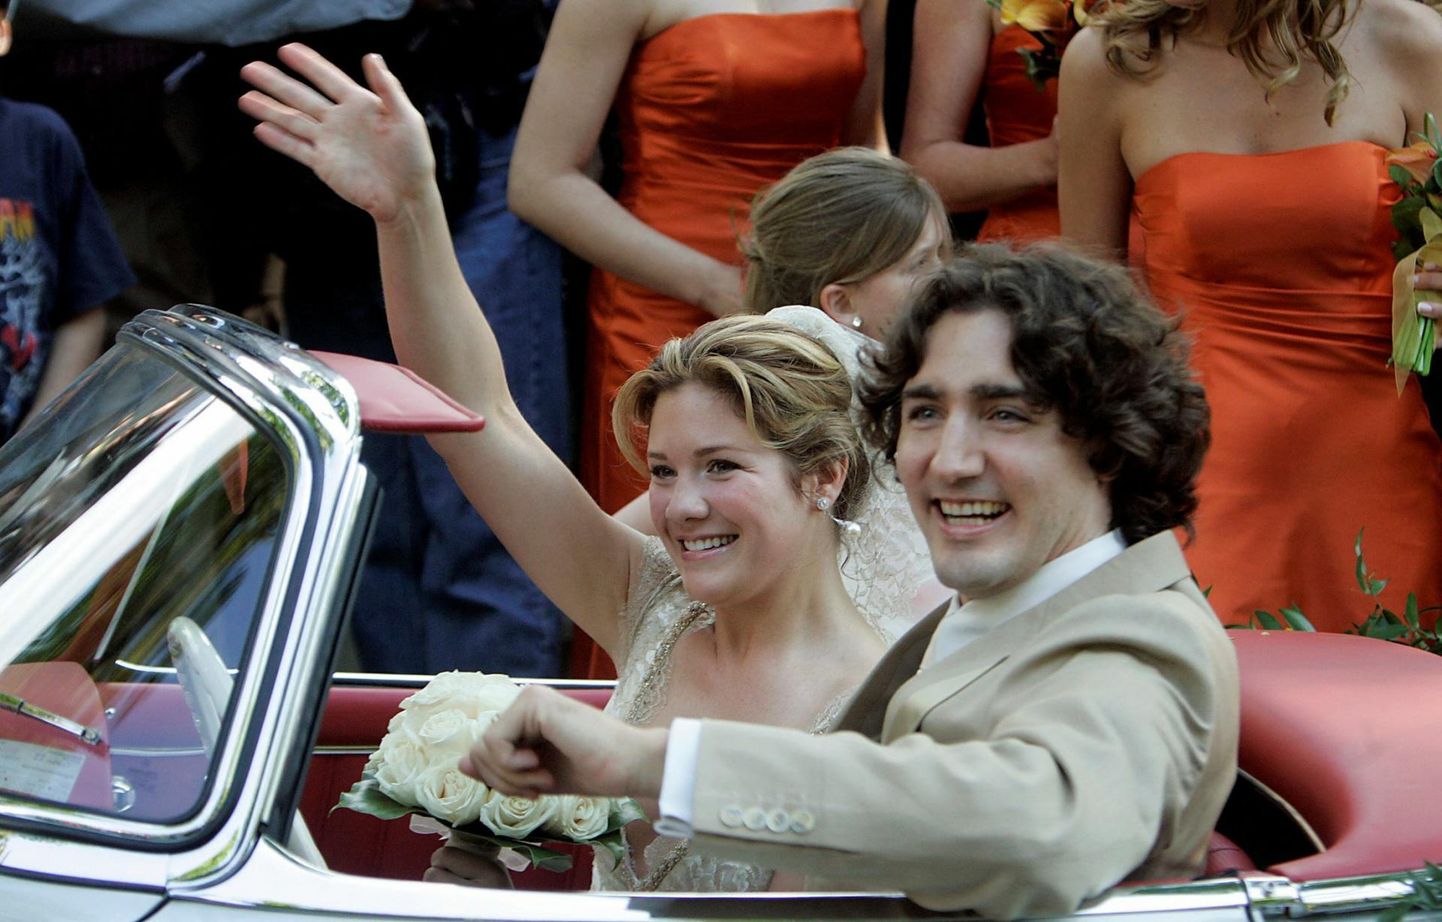 Vastabiellunud Justin Trudeau ja Grégoire pulmapäeval, 28. mail 2005 pärast kiriklikku laulatustseremooniat Montrealis Justini tipp-poliitikust isa 1959. aasta Mercedeses.